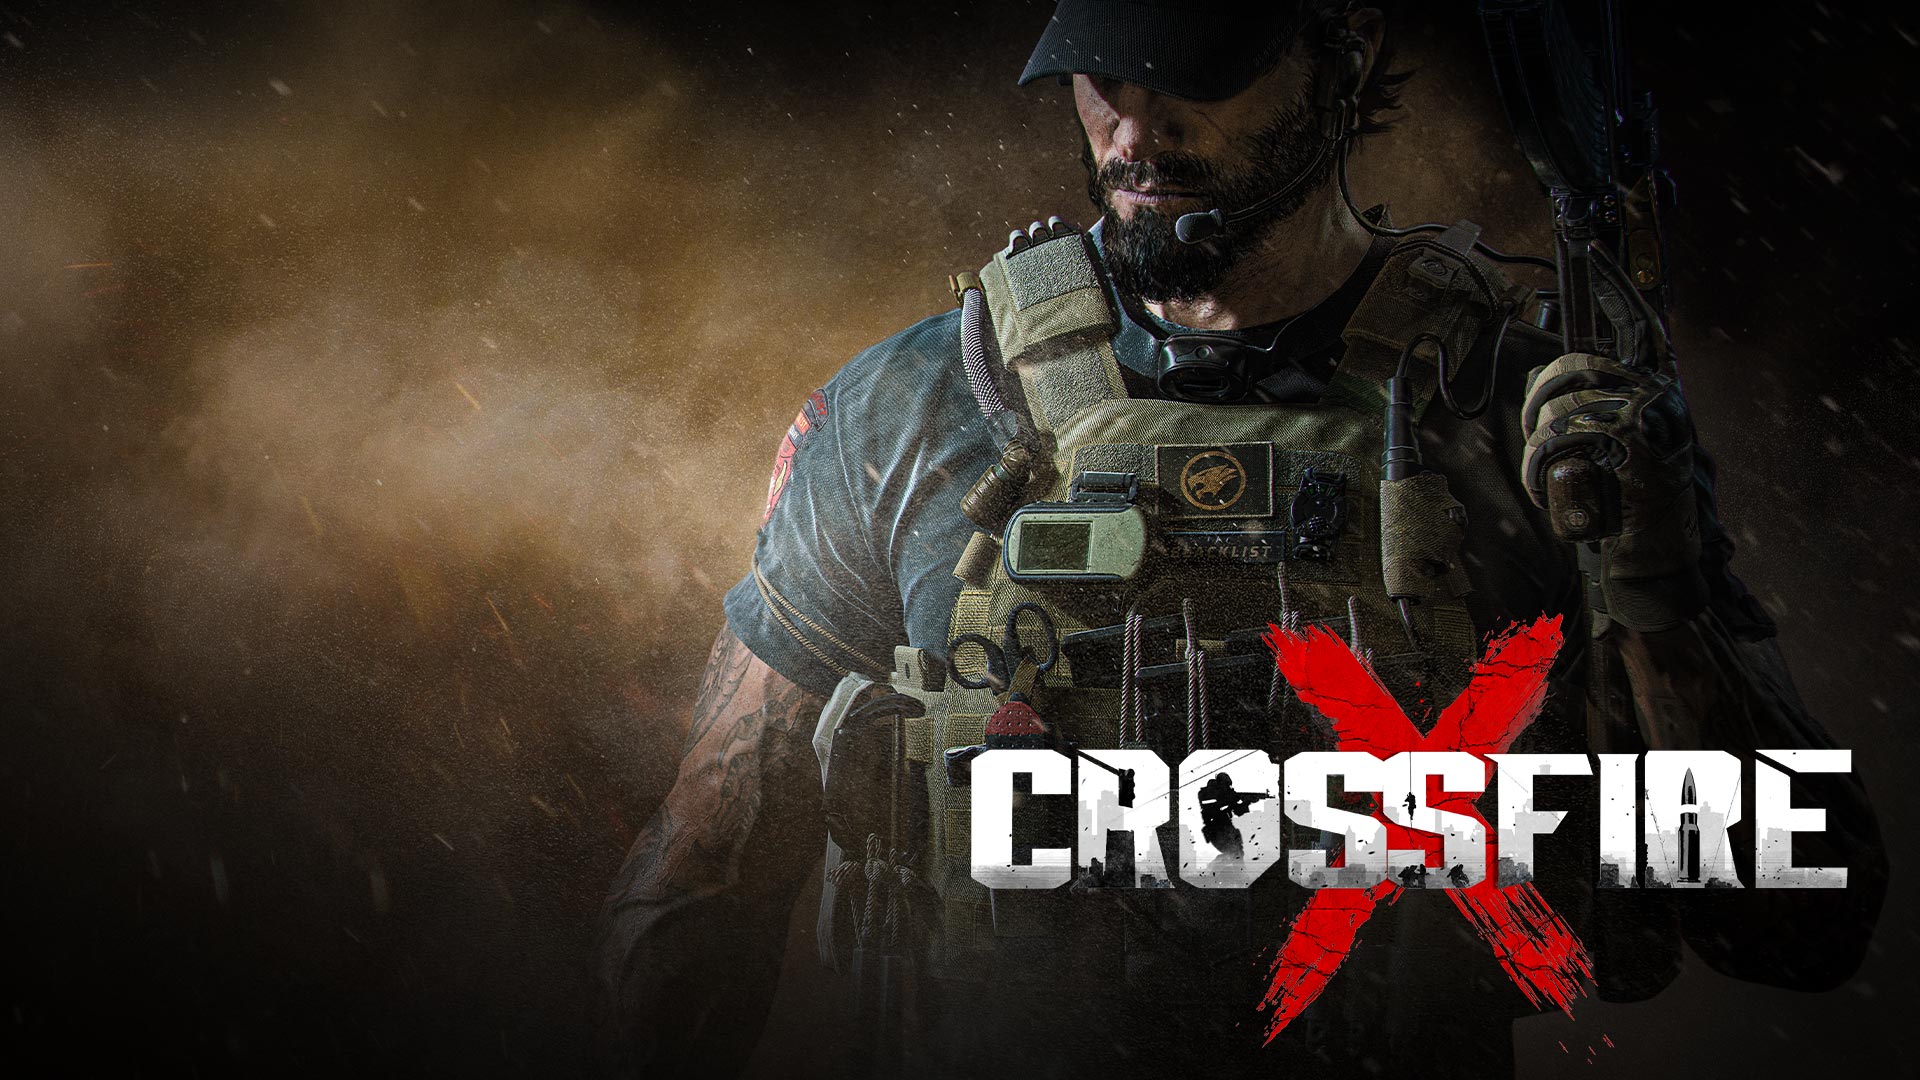 В кампанию CrossfireX теперь можно играть по Game Pass - вышло обновление